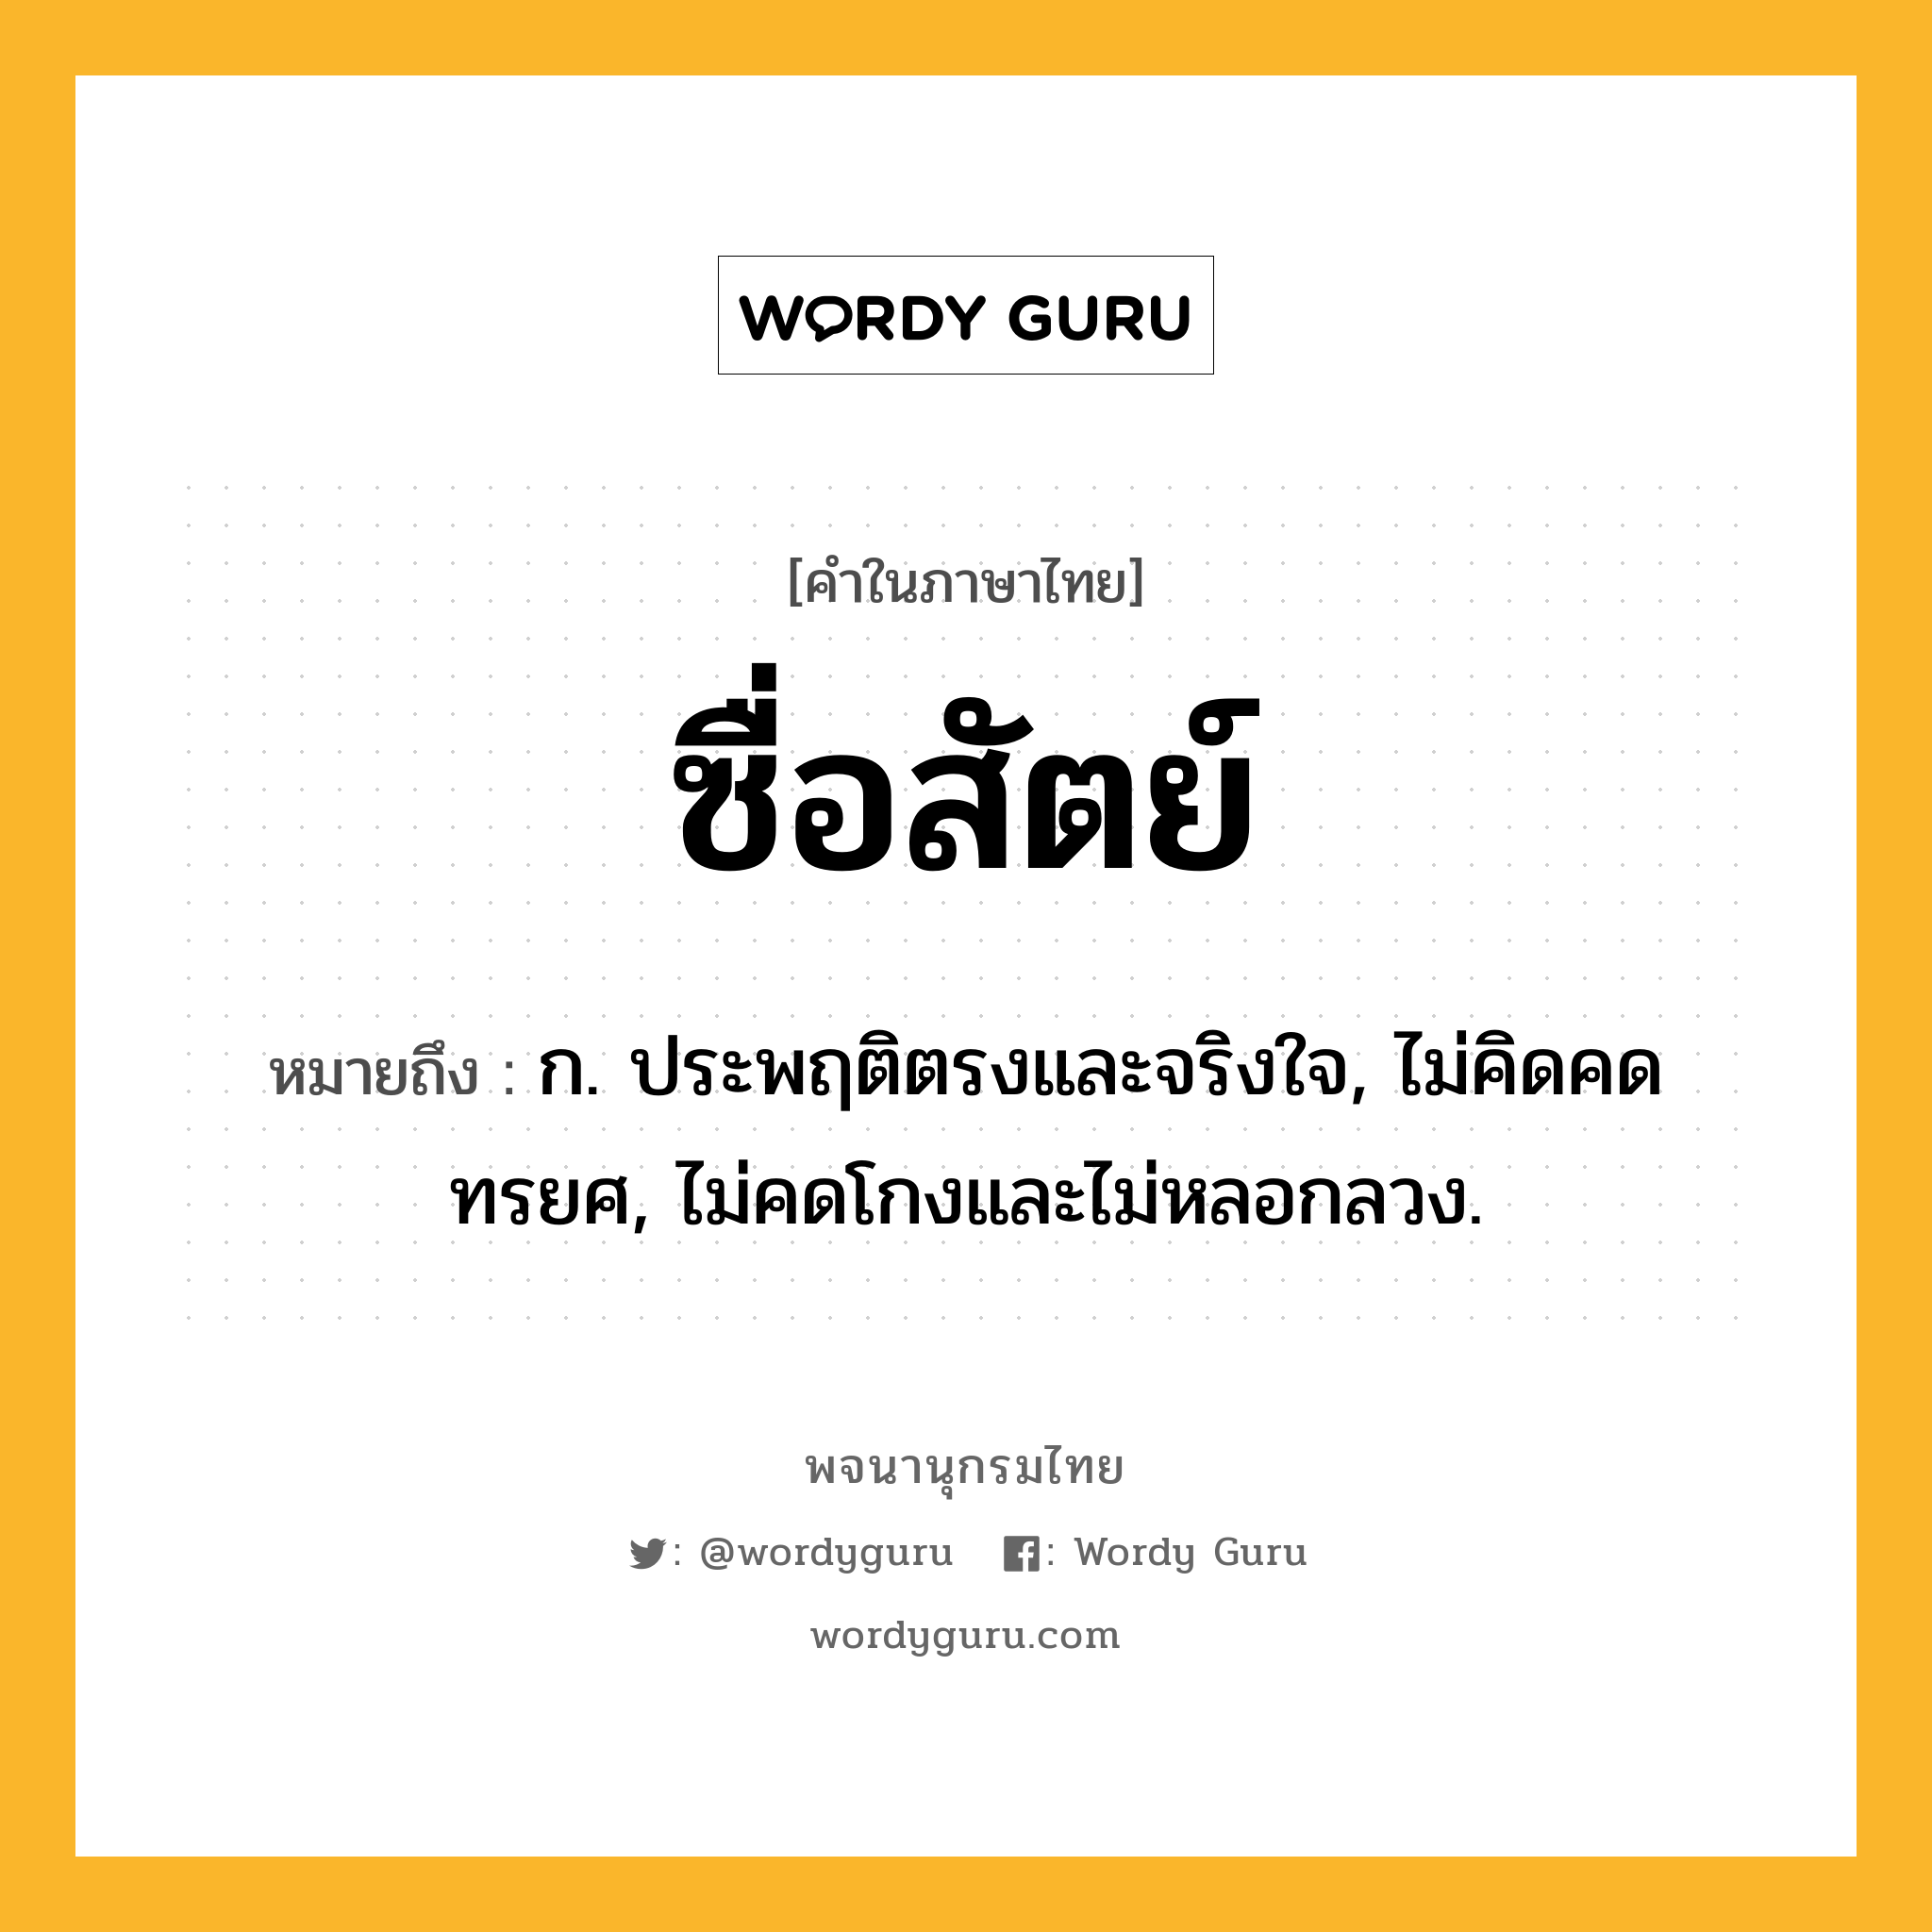 ซื่อสัตย์ หมายถึงอะไร?, คำในภาษาไทย ซื่อสัตย์ หมายถึง ก. ประพฤติตรงและจริงใจ, ไม่คิดคดทรยศ, ไม่คดโกงและไม่หลอกลวง.